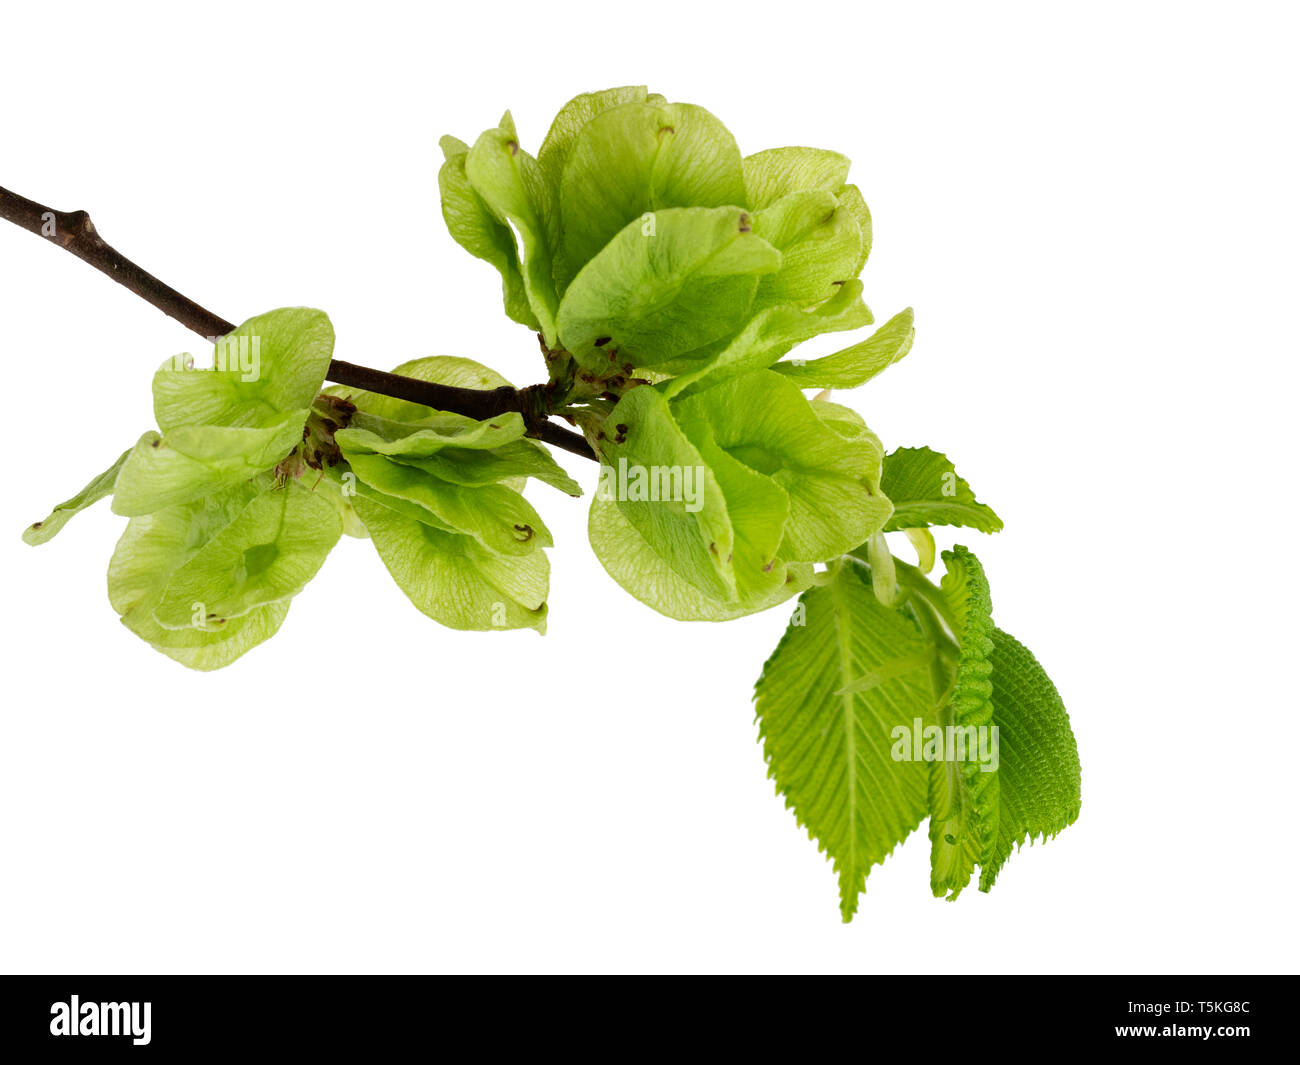 La molla delle foglie e semi di alato del Regno Unito native Wych elm tree, Ulmus glabra su sfondo bianco Foto Stock